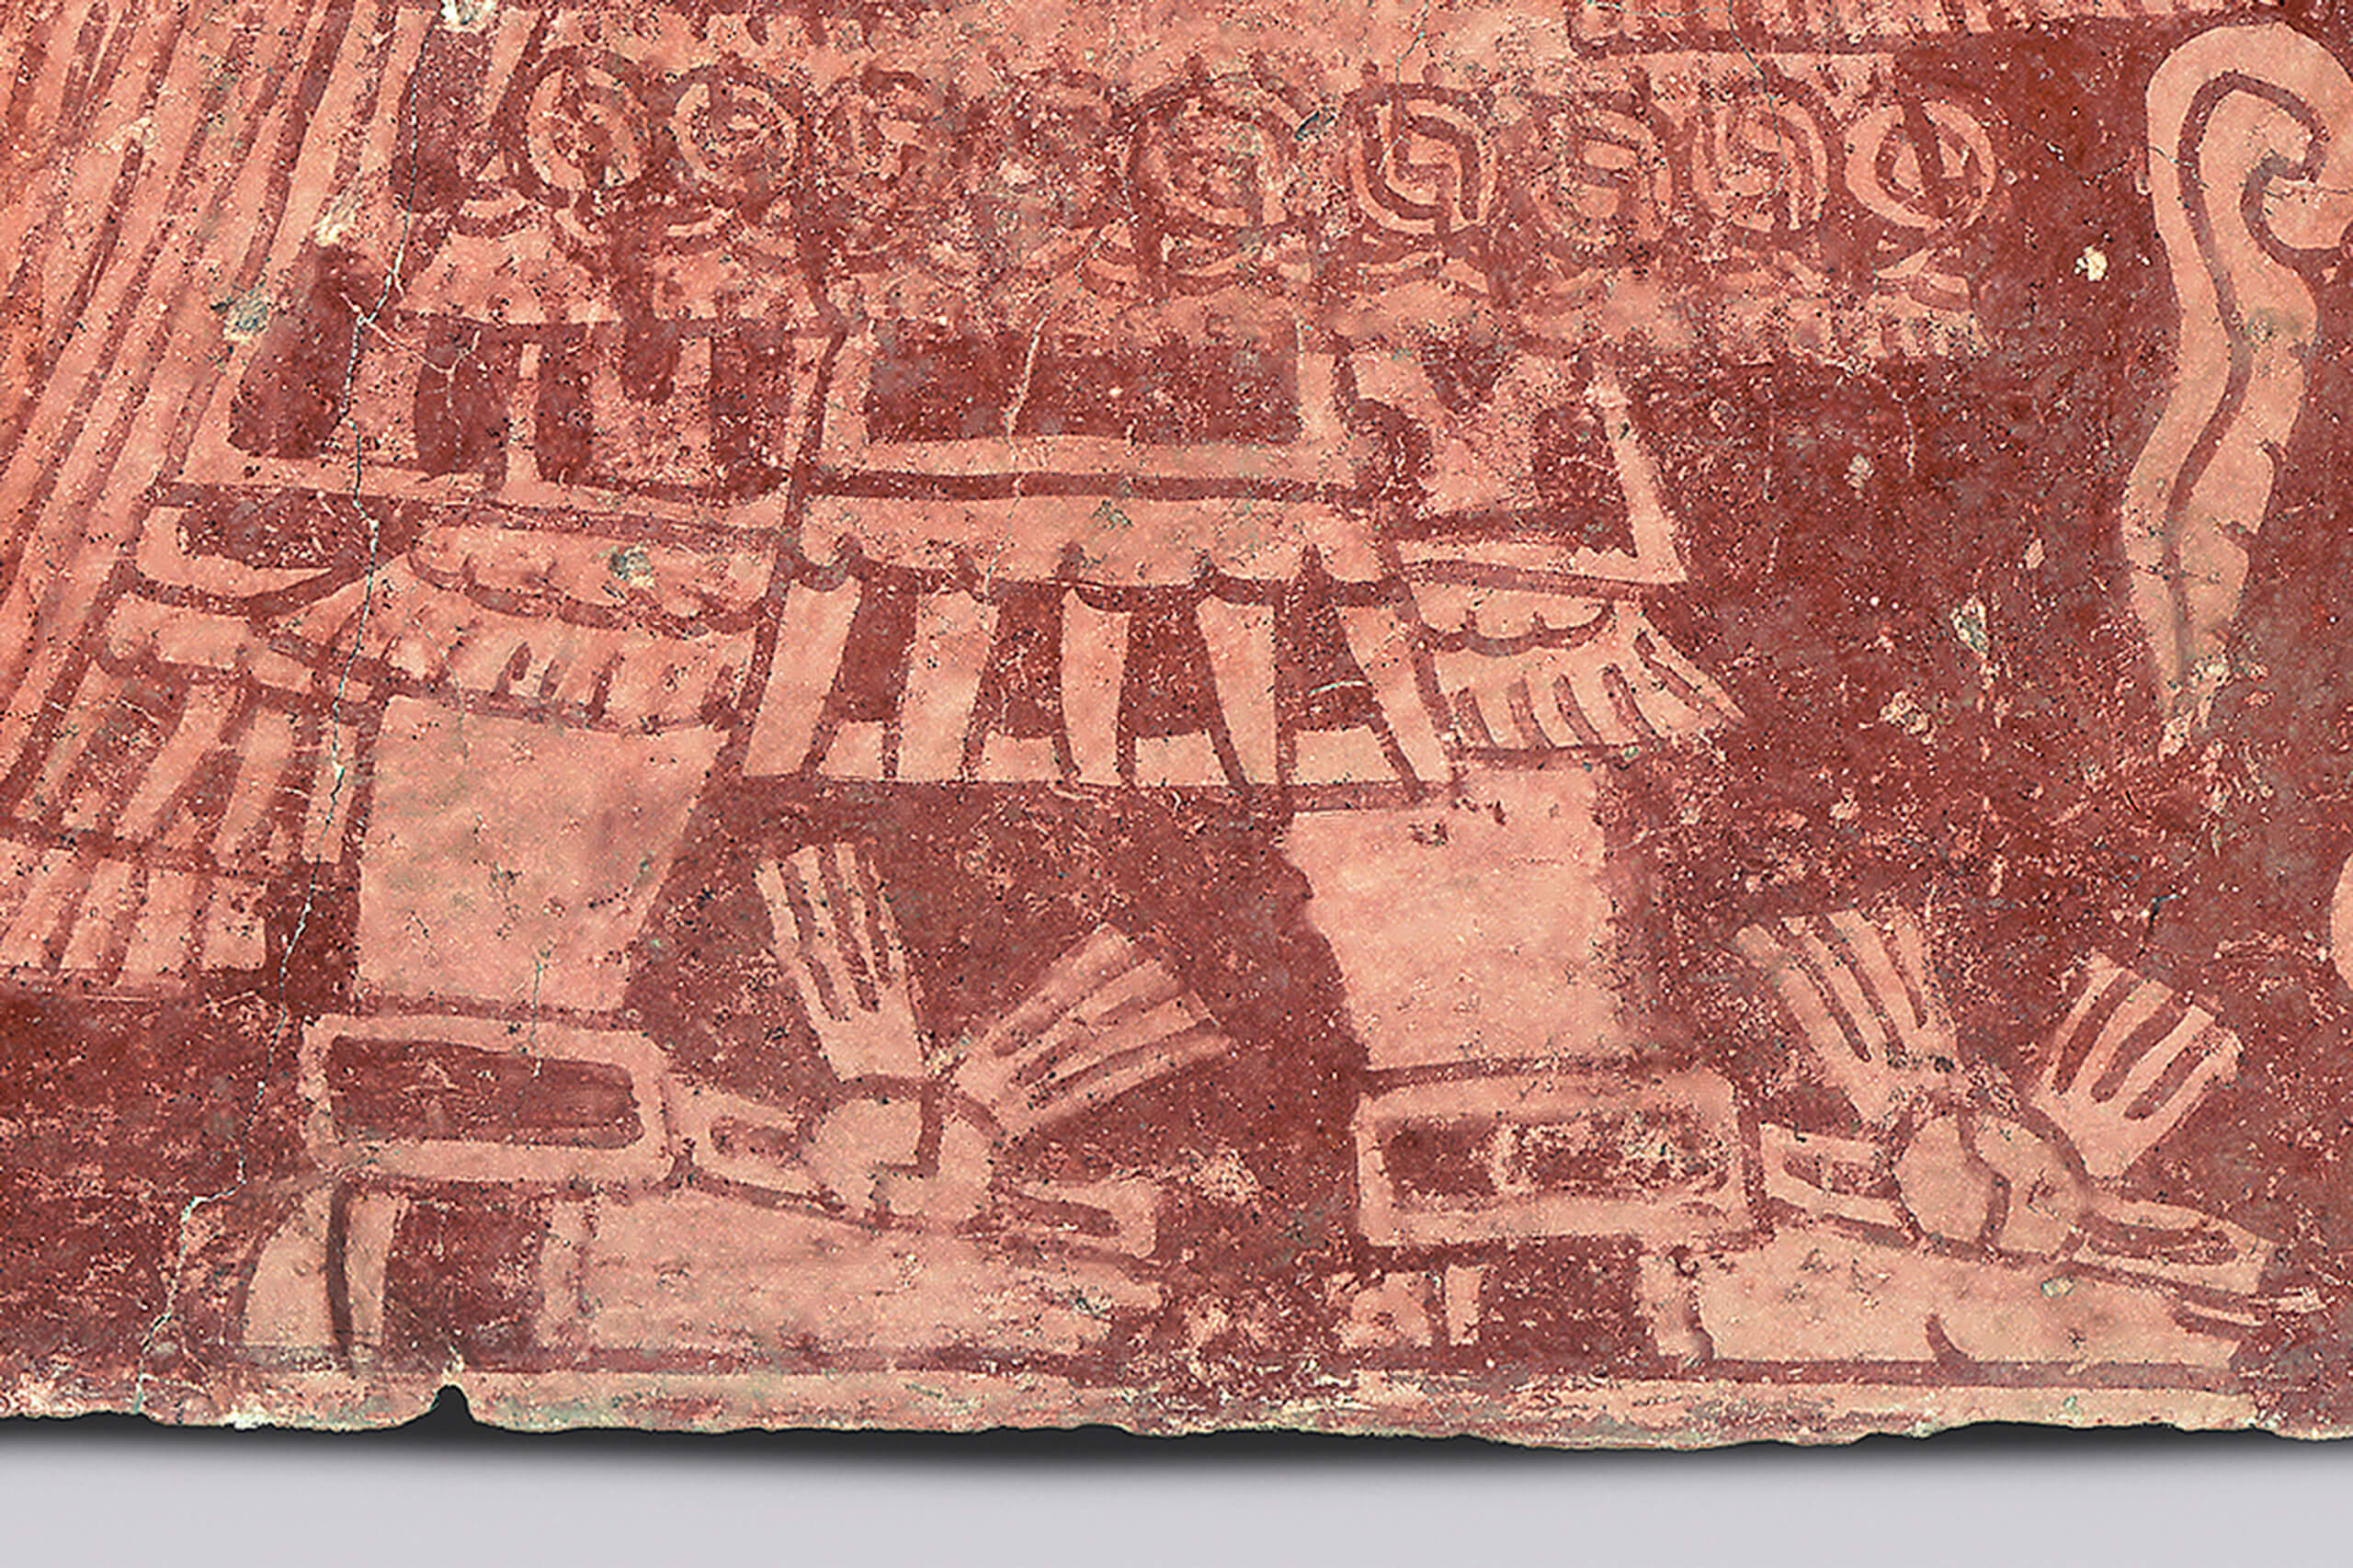 El dios Tláloc, fragmento de pintura mural | La imaginación sin límites | Museo Amparo, Puebla